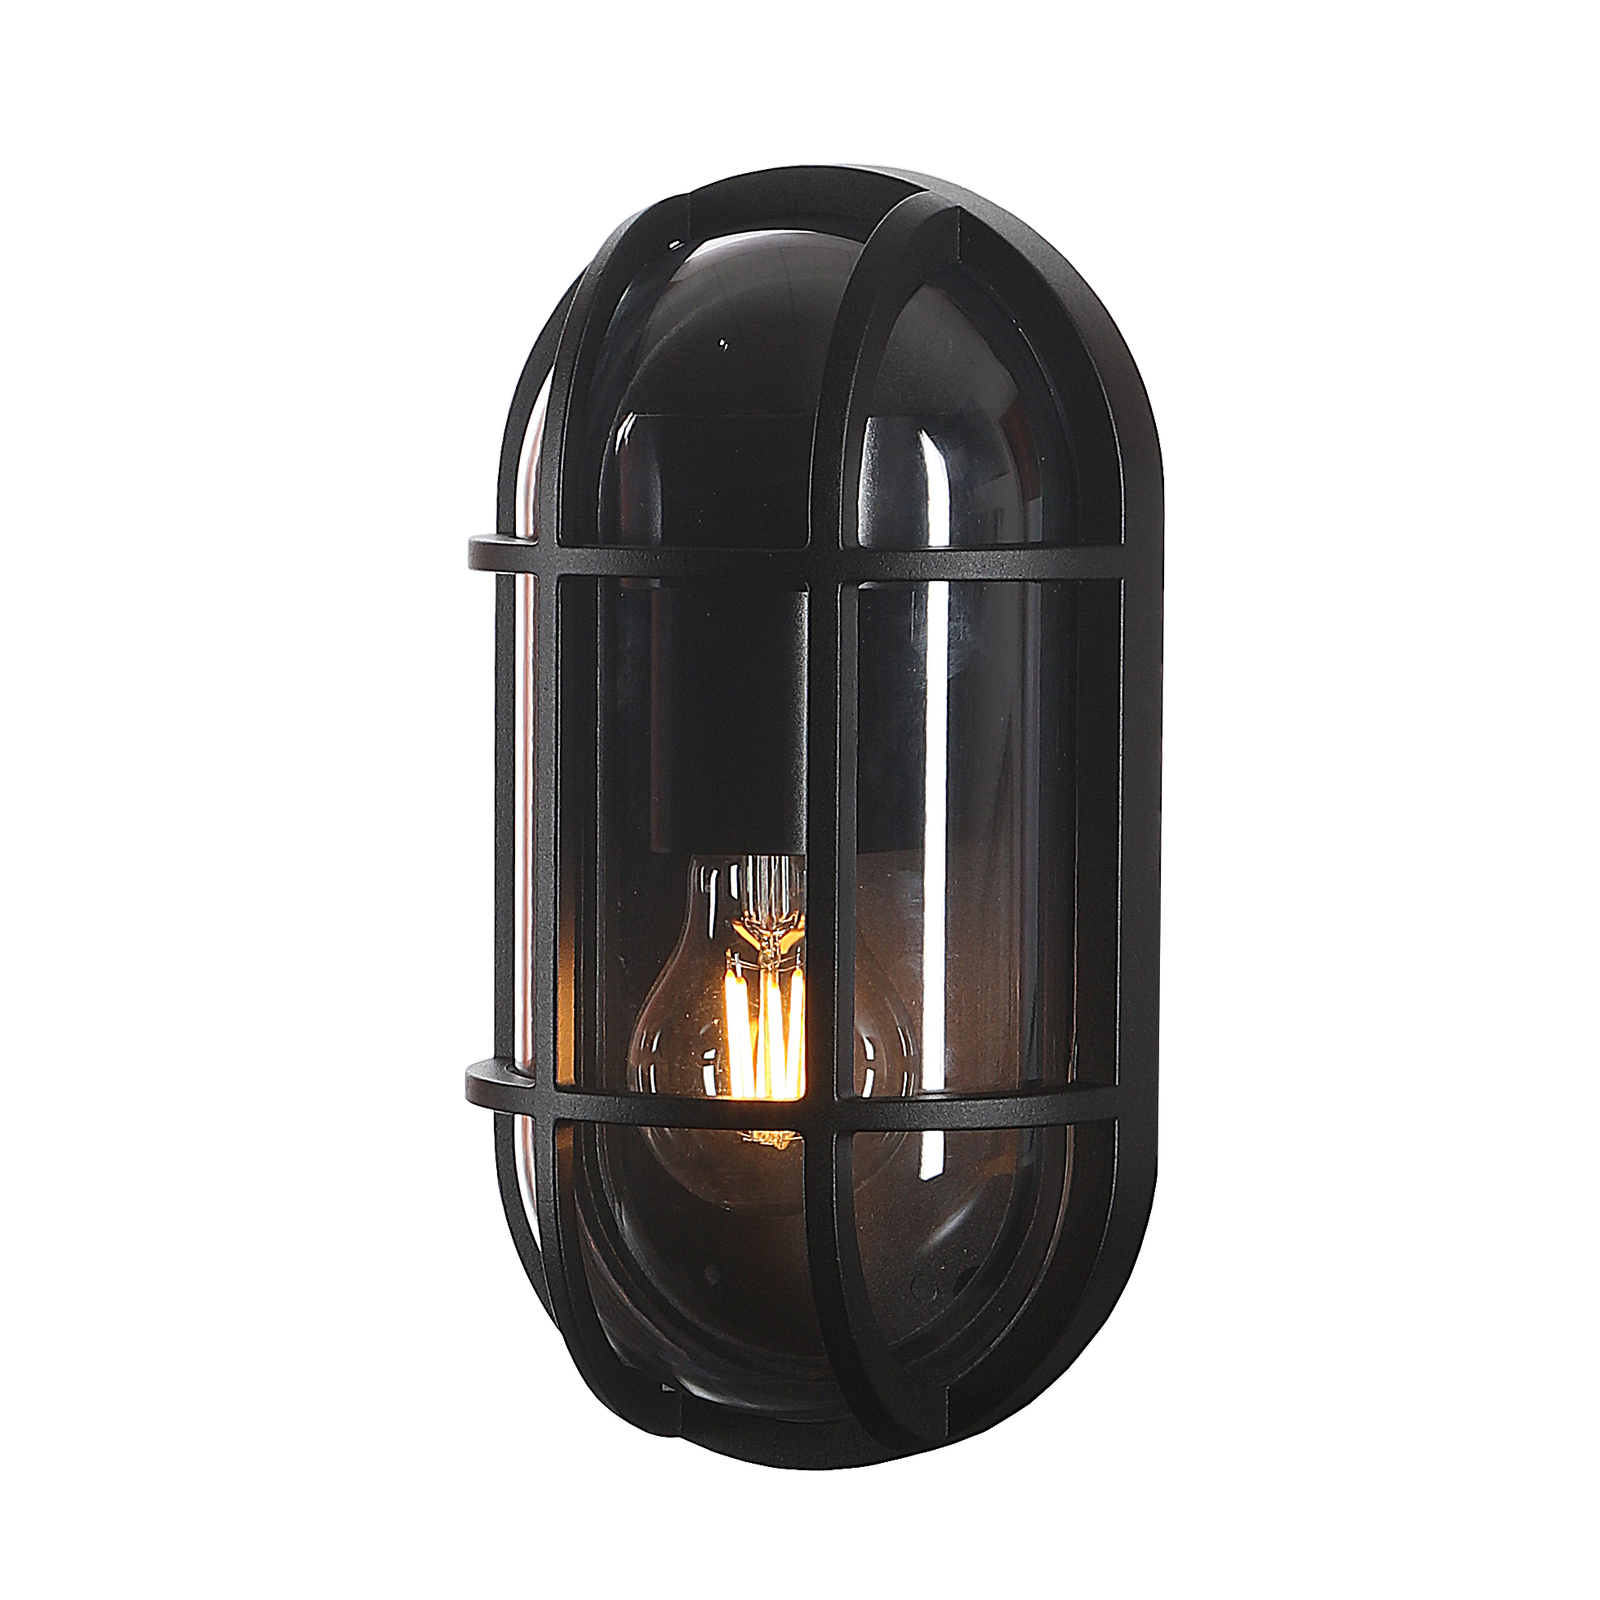 Lucande Serine outdoor wall light, 27.1 cm, black, aluminium